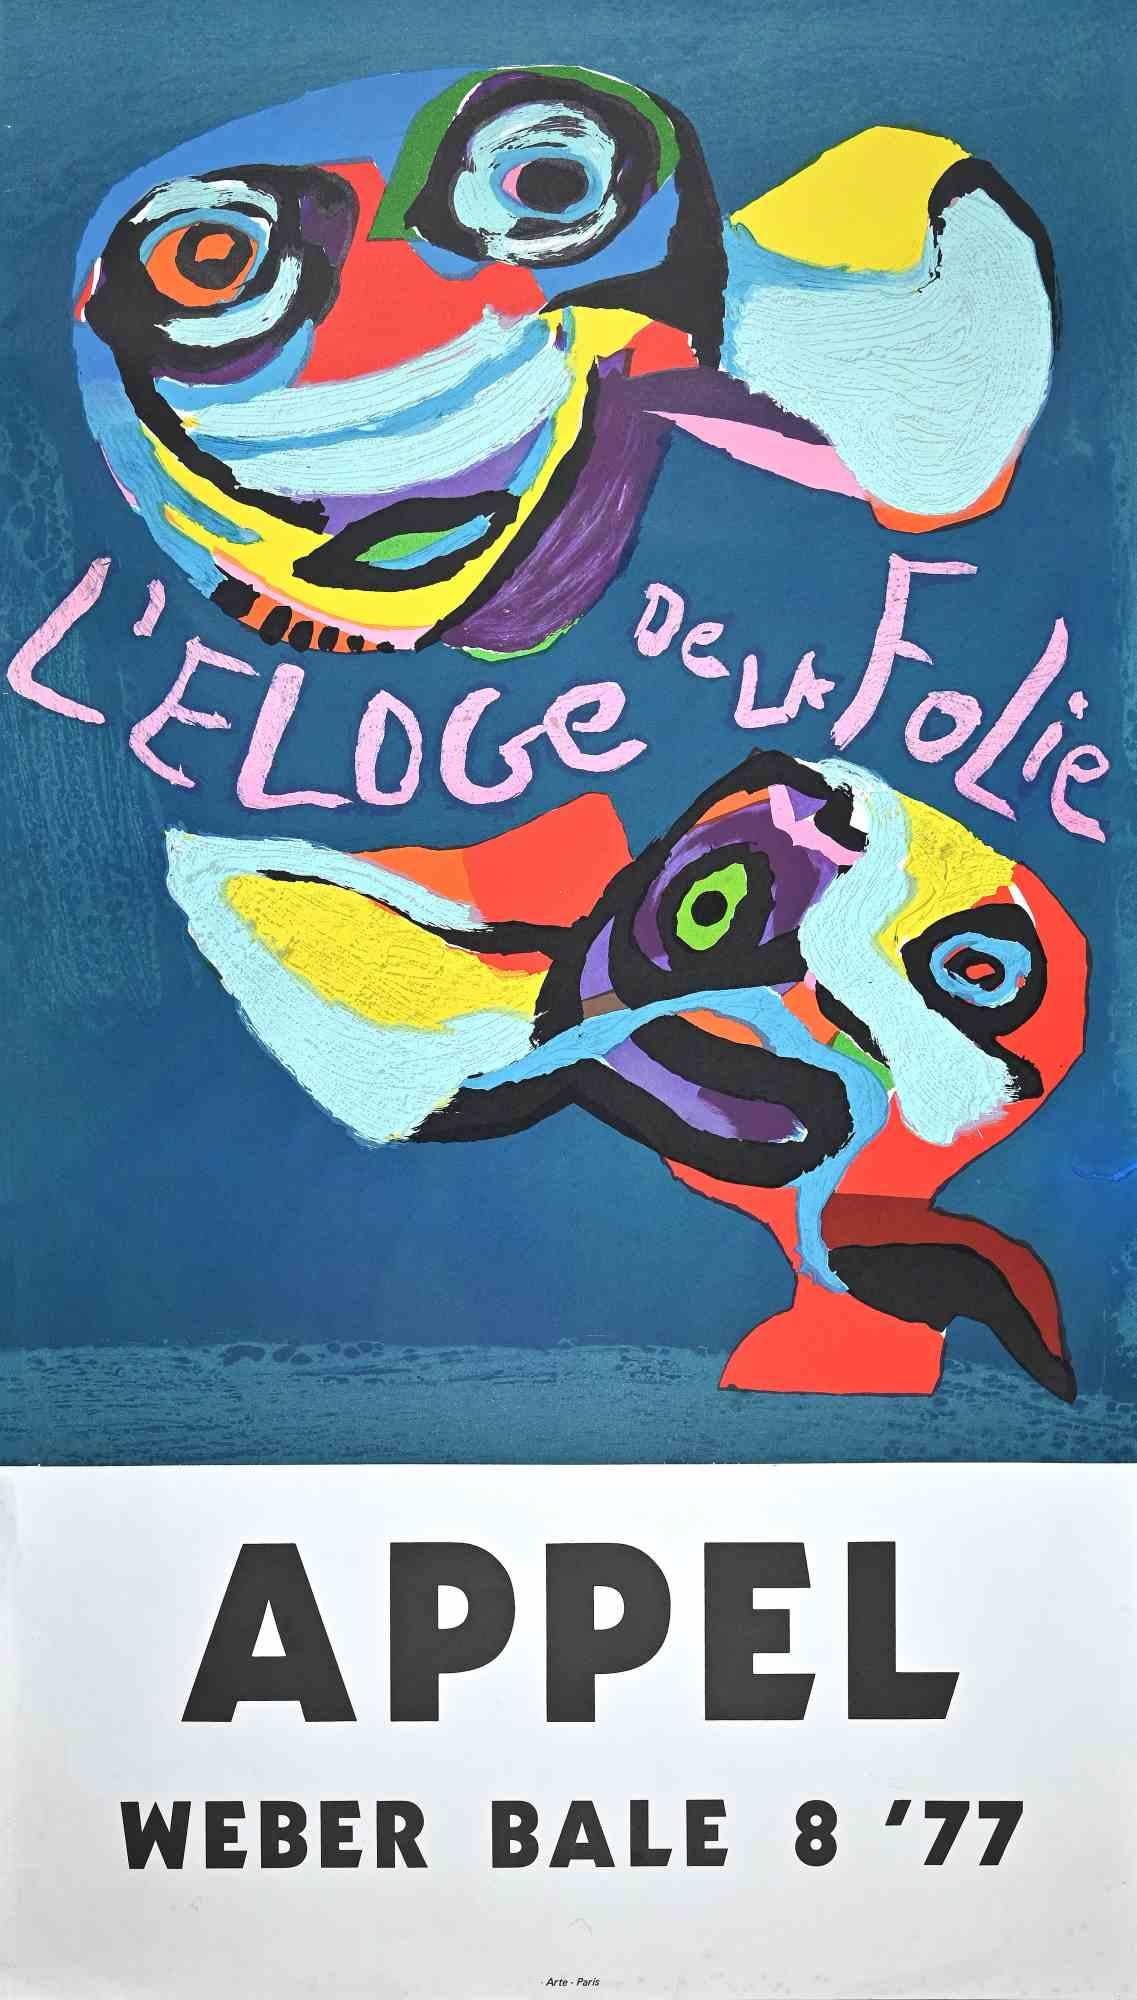 Karel Appel Abstract Print - Eloge de la Folie - Vintage Screen Print Poster - 1977